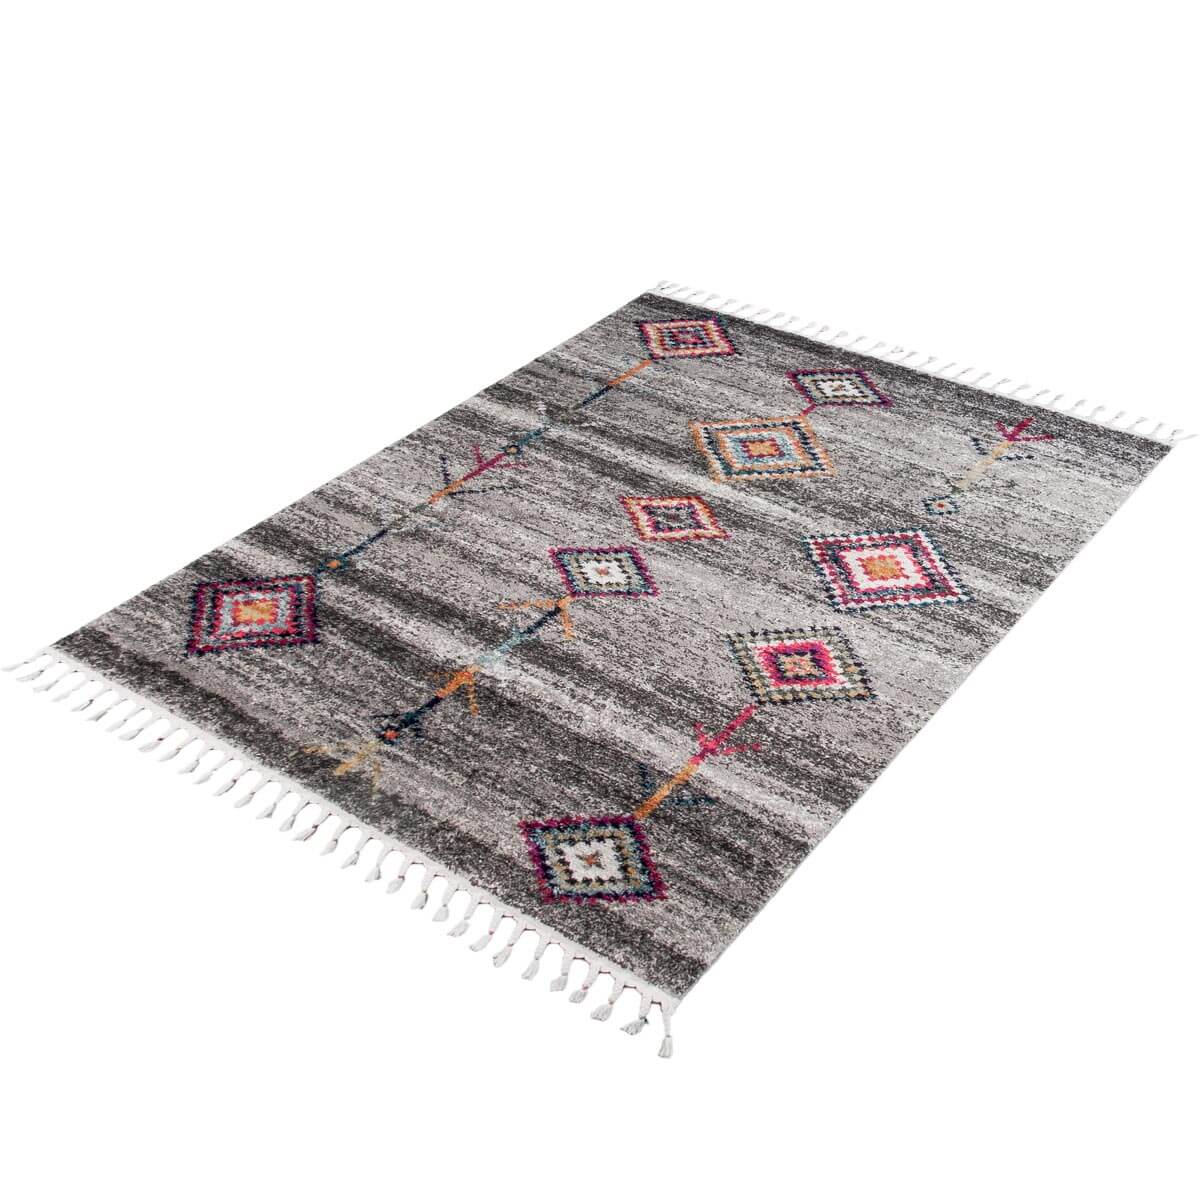 שטיח מיקונוס 01 אפור עם פרנזים | השטיח האדום